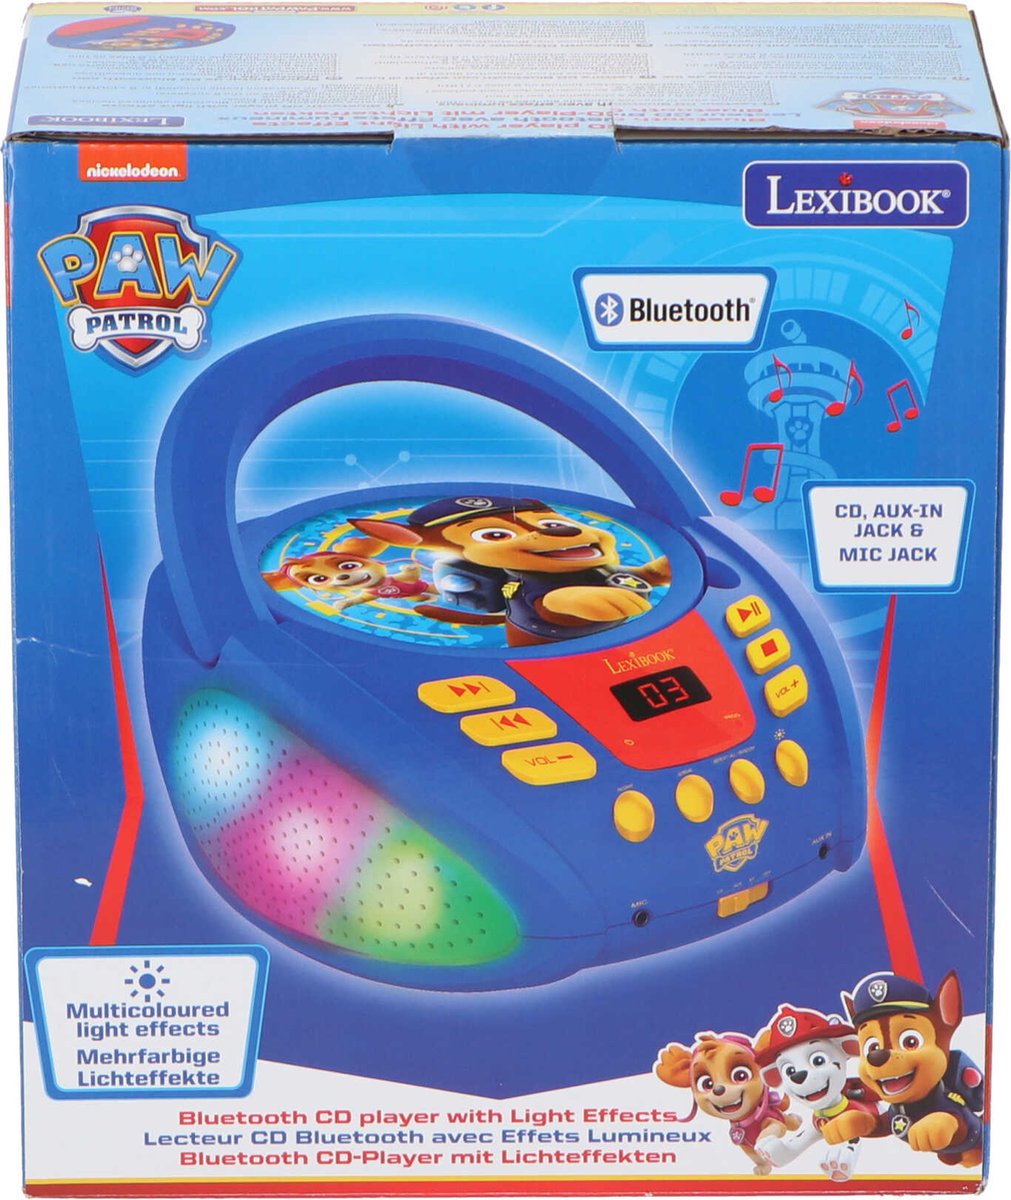 La Licorne - Lecteur CD Bluetooth avec effet lumineux LEXIBOOK